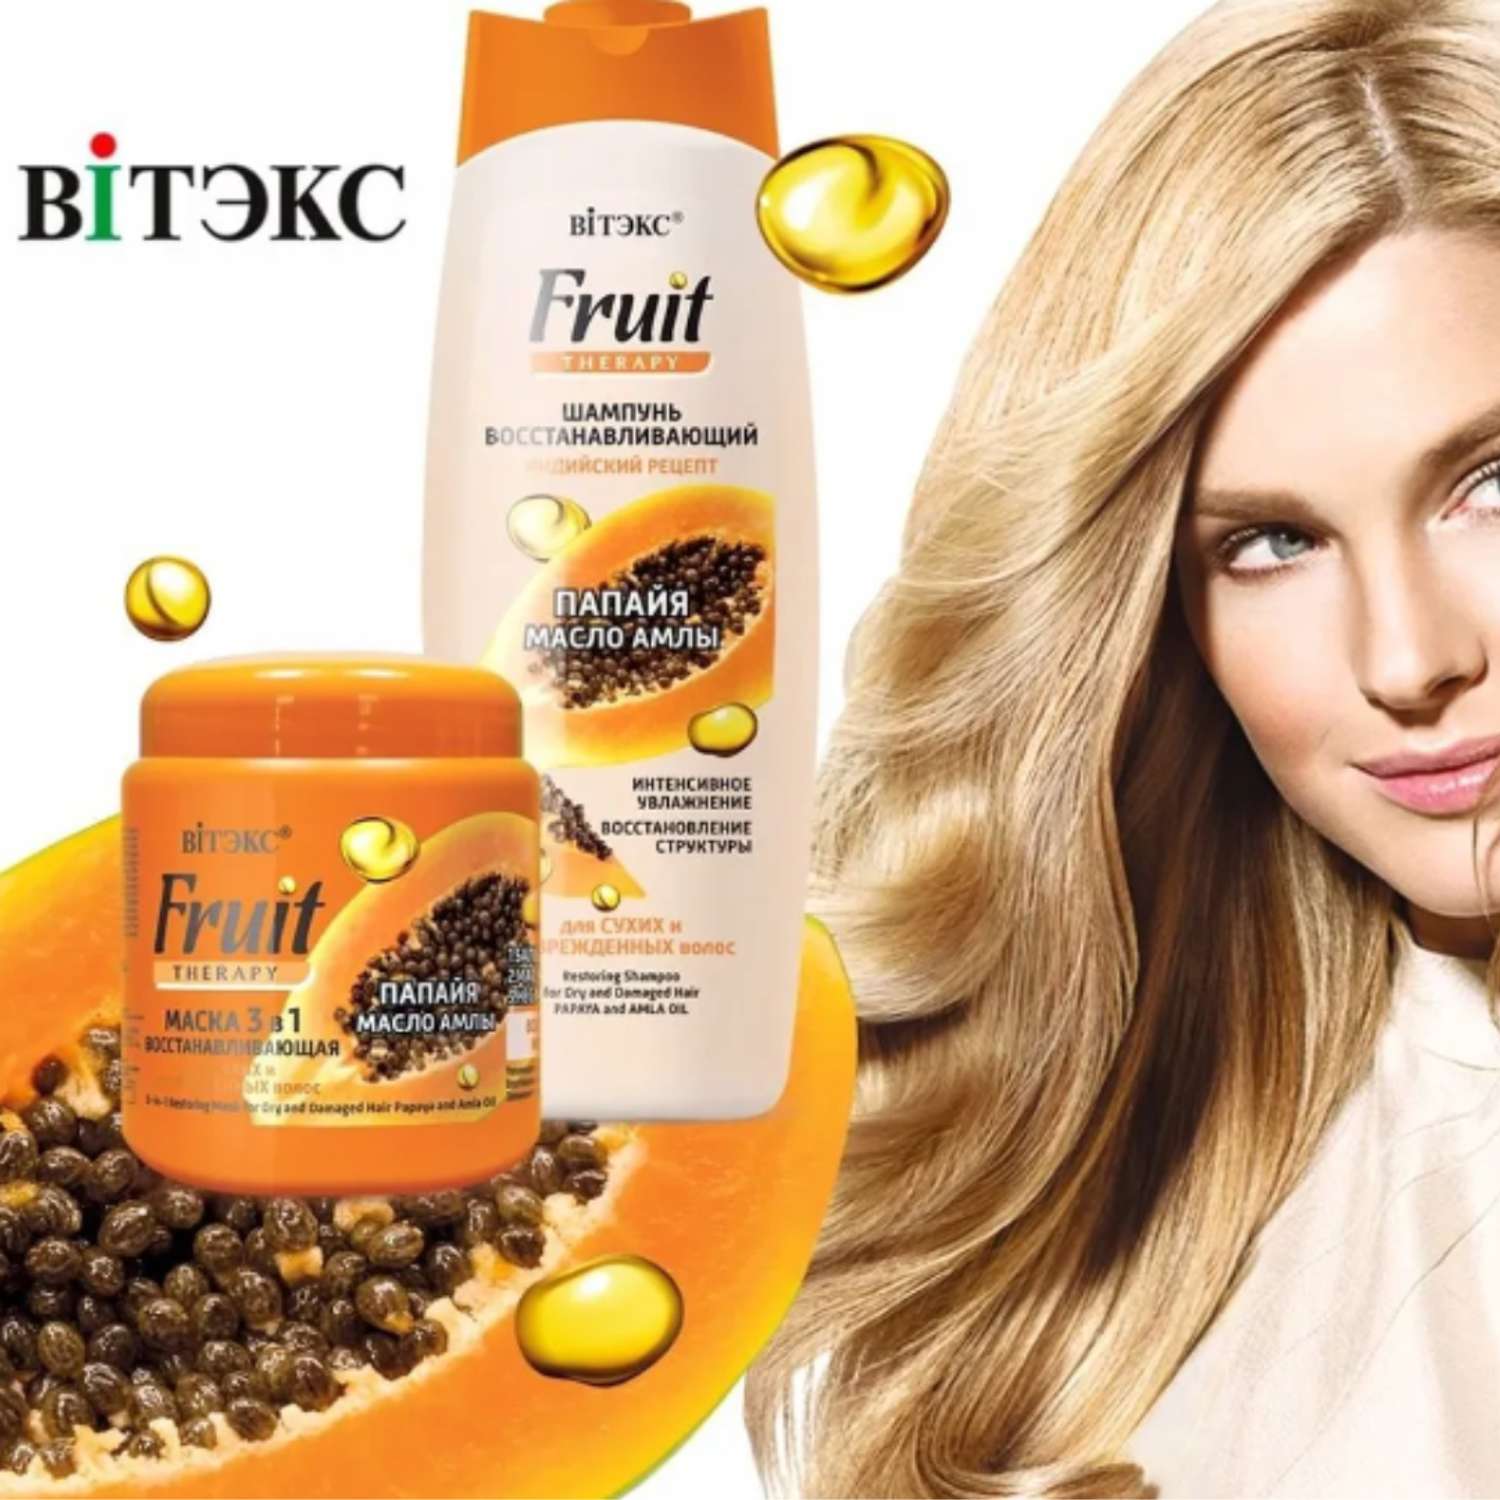 Маска для волос ВИТЭКС Fruit Therapy восстанавливающая 3в1 папайя и масло амлы 450 мл - фото 4